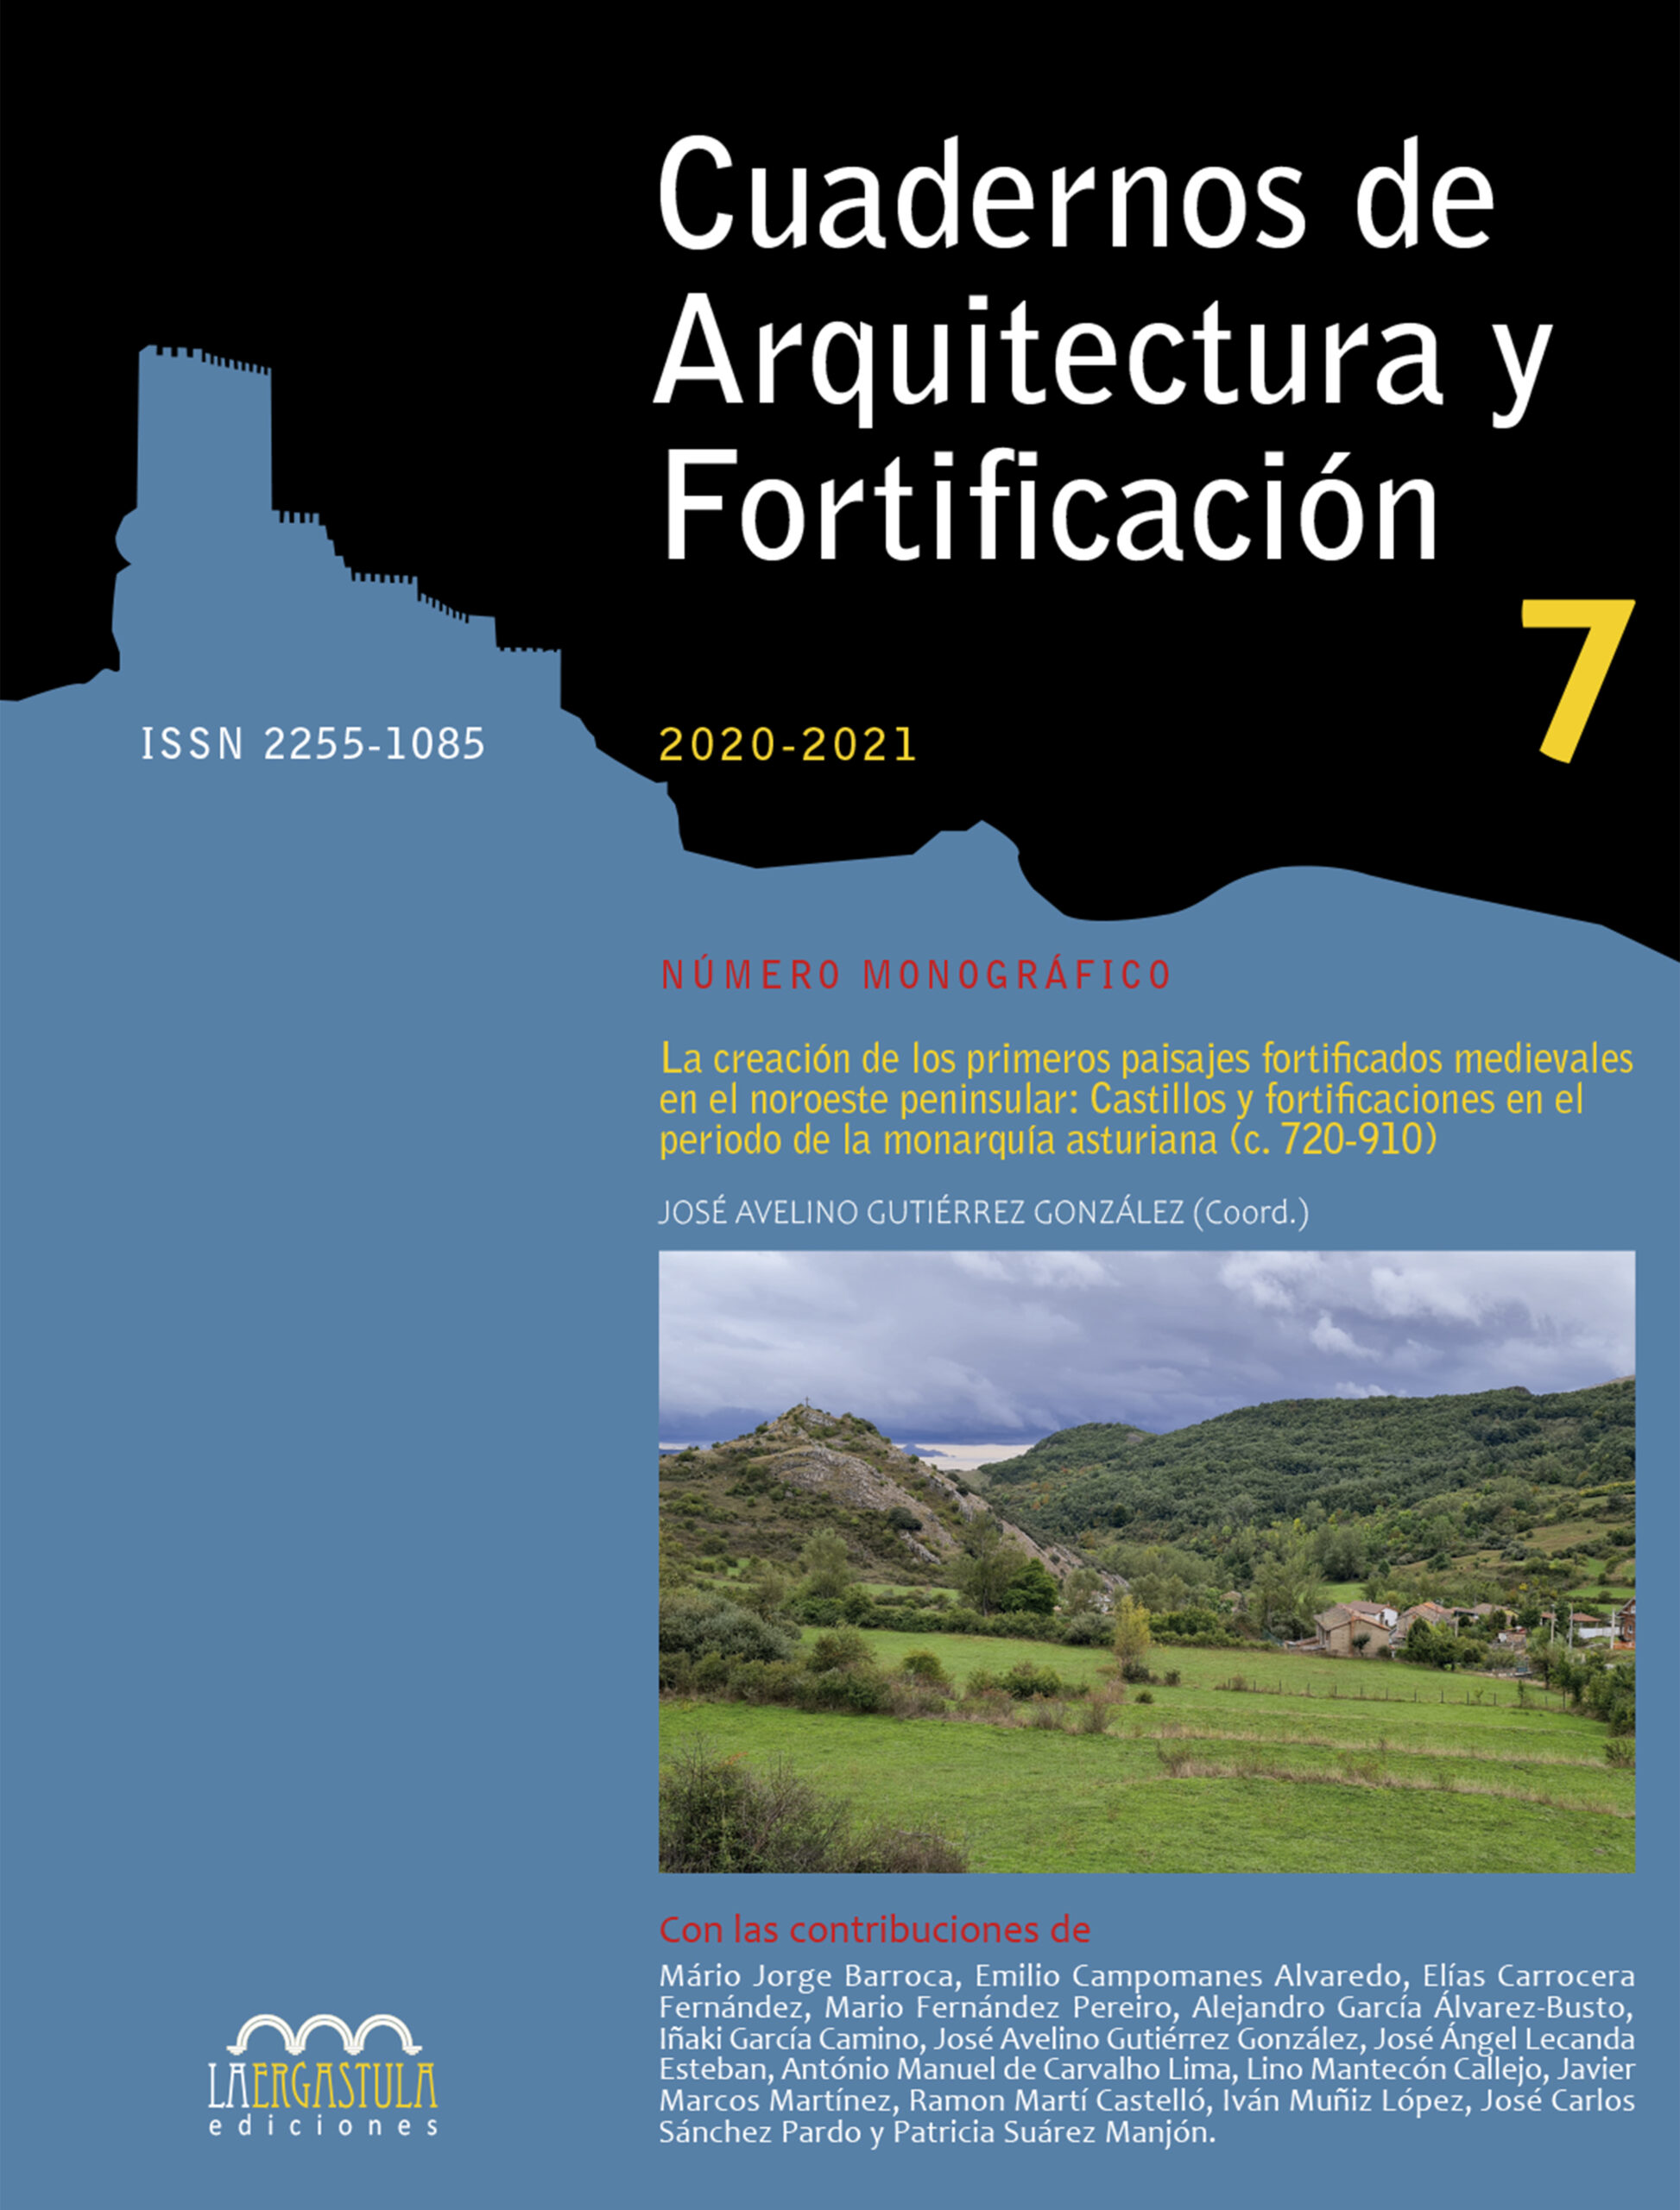 Cuadernos de Arquitectura y Fortificación, Nº 7, años 2020-2021